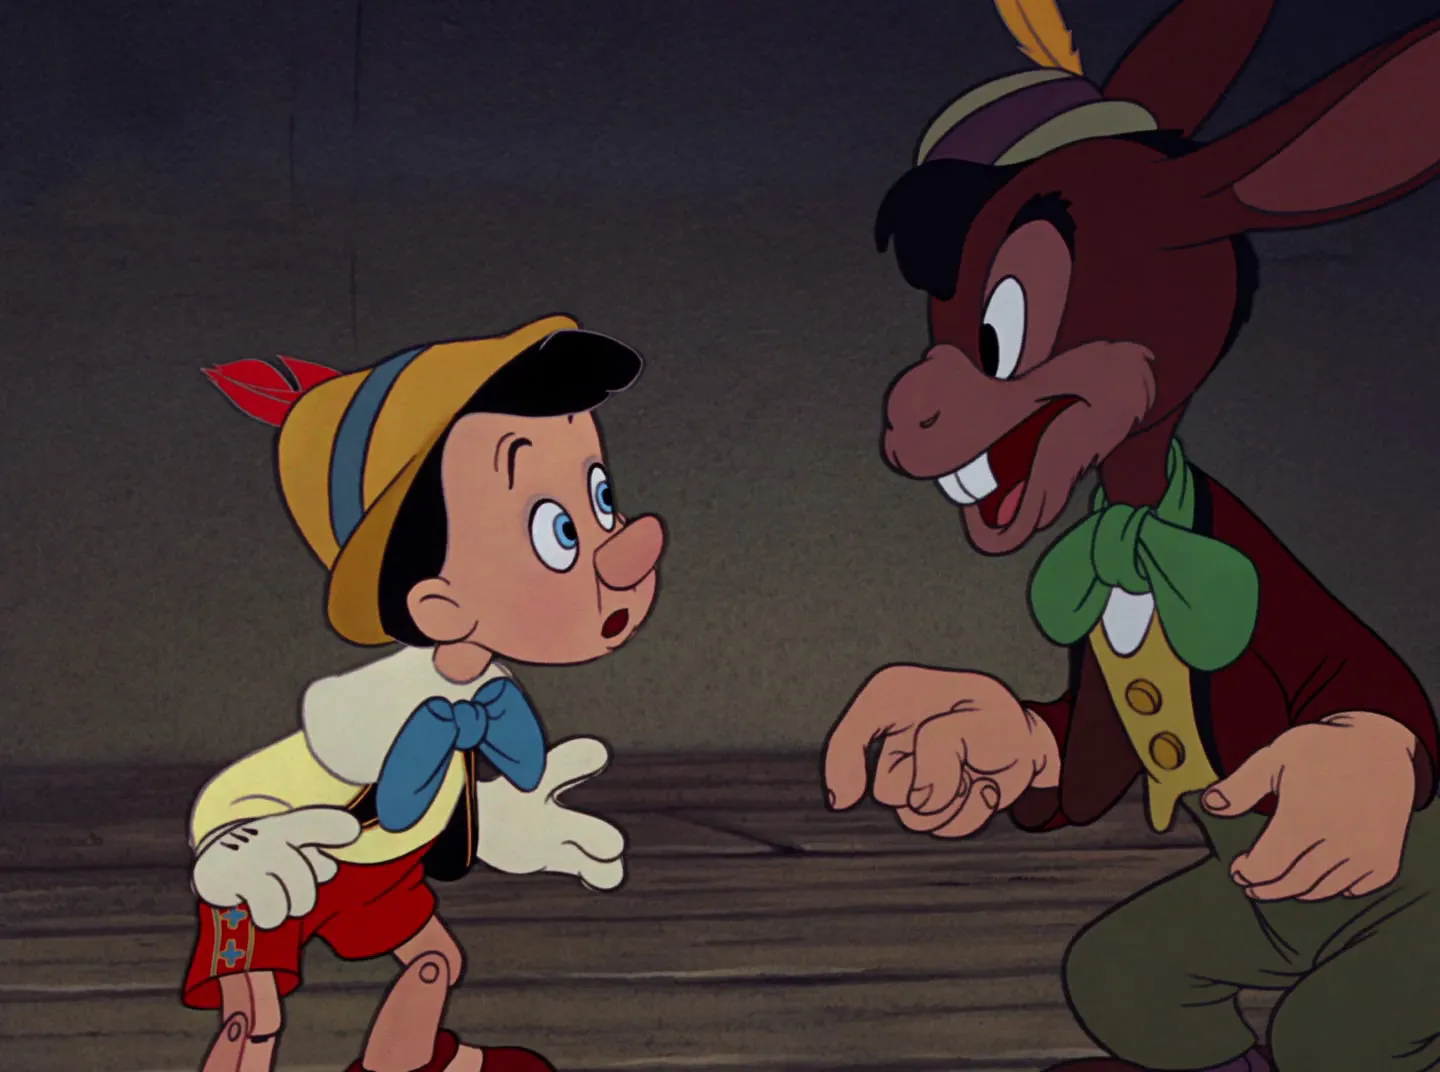 Marionnette ventriloque de dessin animé de Pinocchio, marionnette